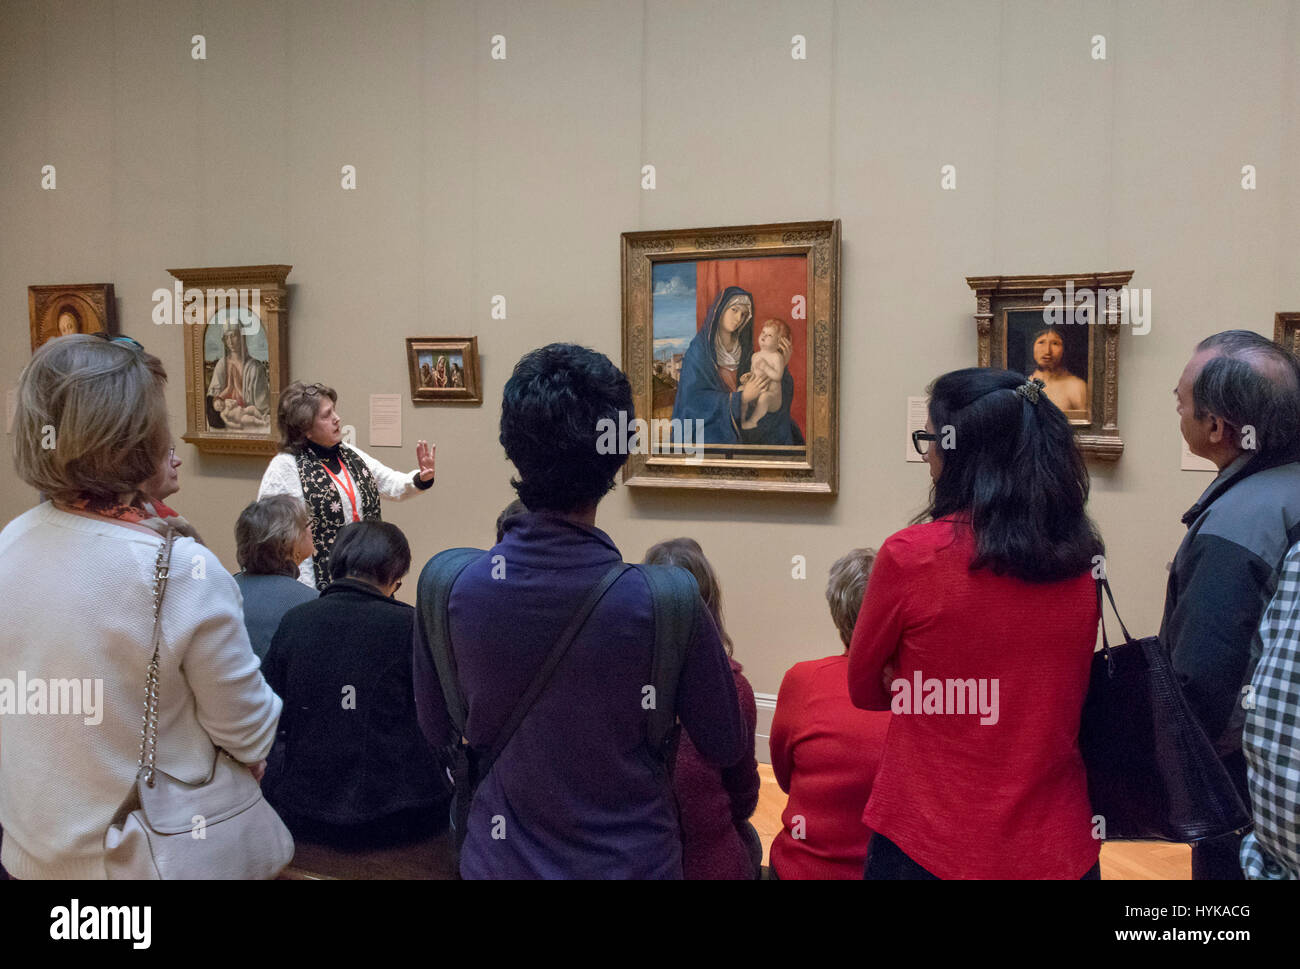 Los visitantes escuchando a un guía turístico en una galería hablar, Metropolitan Museum of Art, Nueva York, EE.UU. Foto de stock